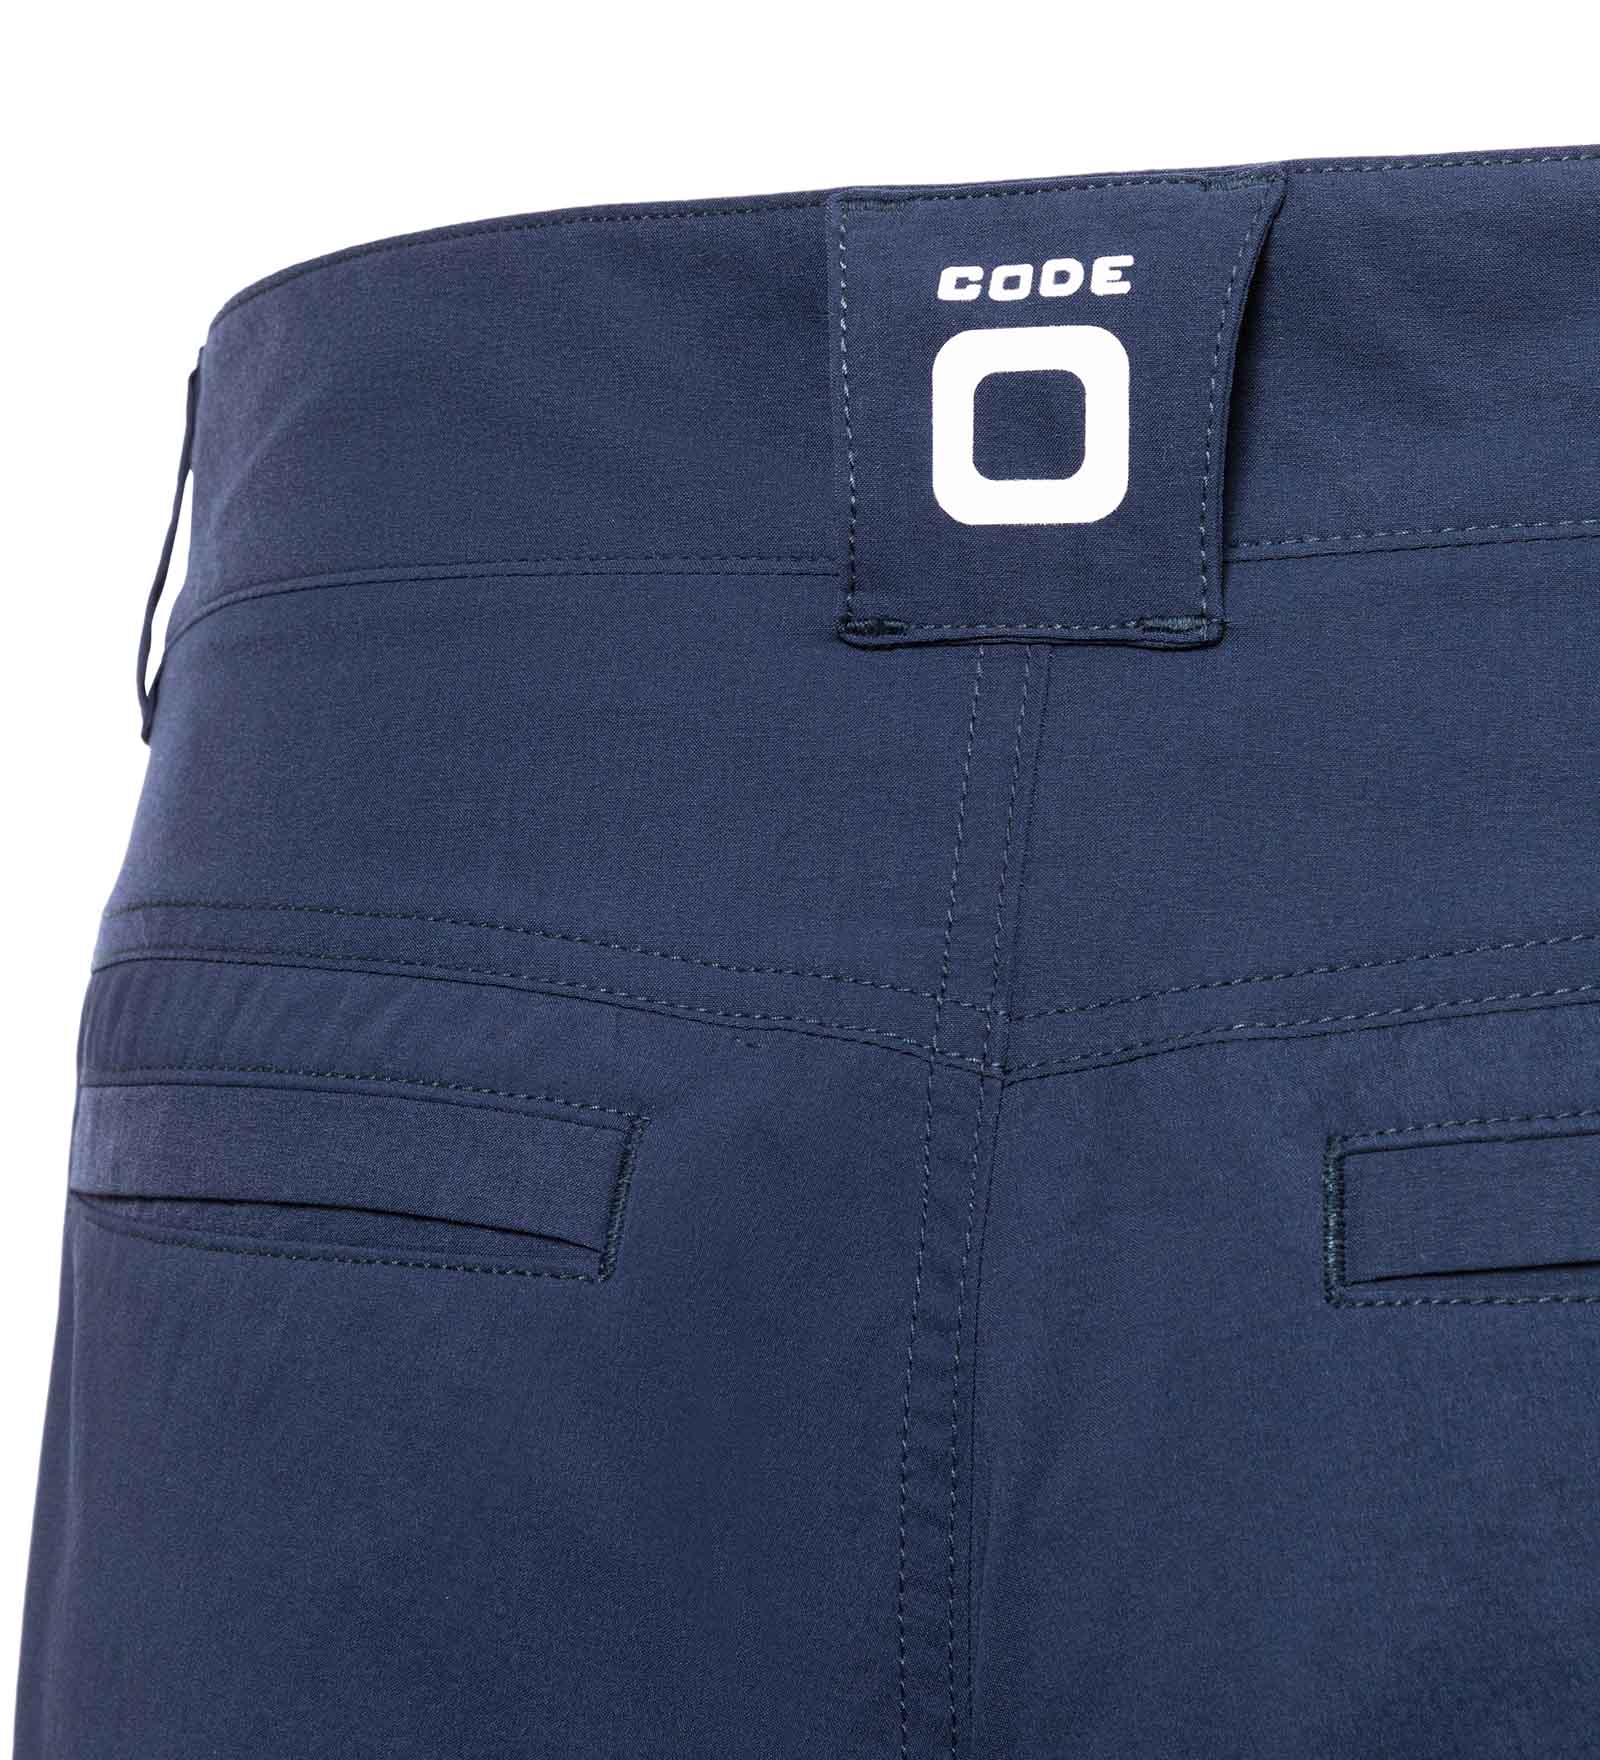 CODE-ZERO Shorts Men Club Navy Blue 3XL | CODE-ZERO